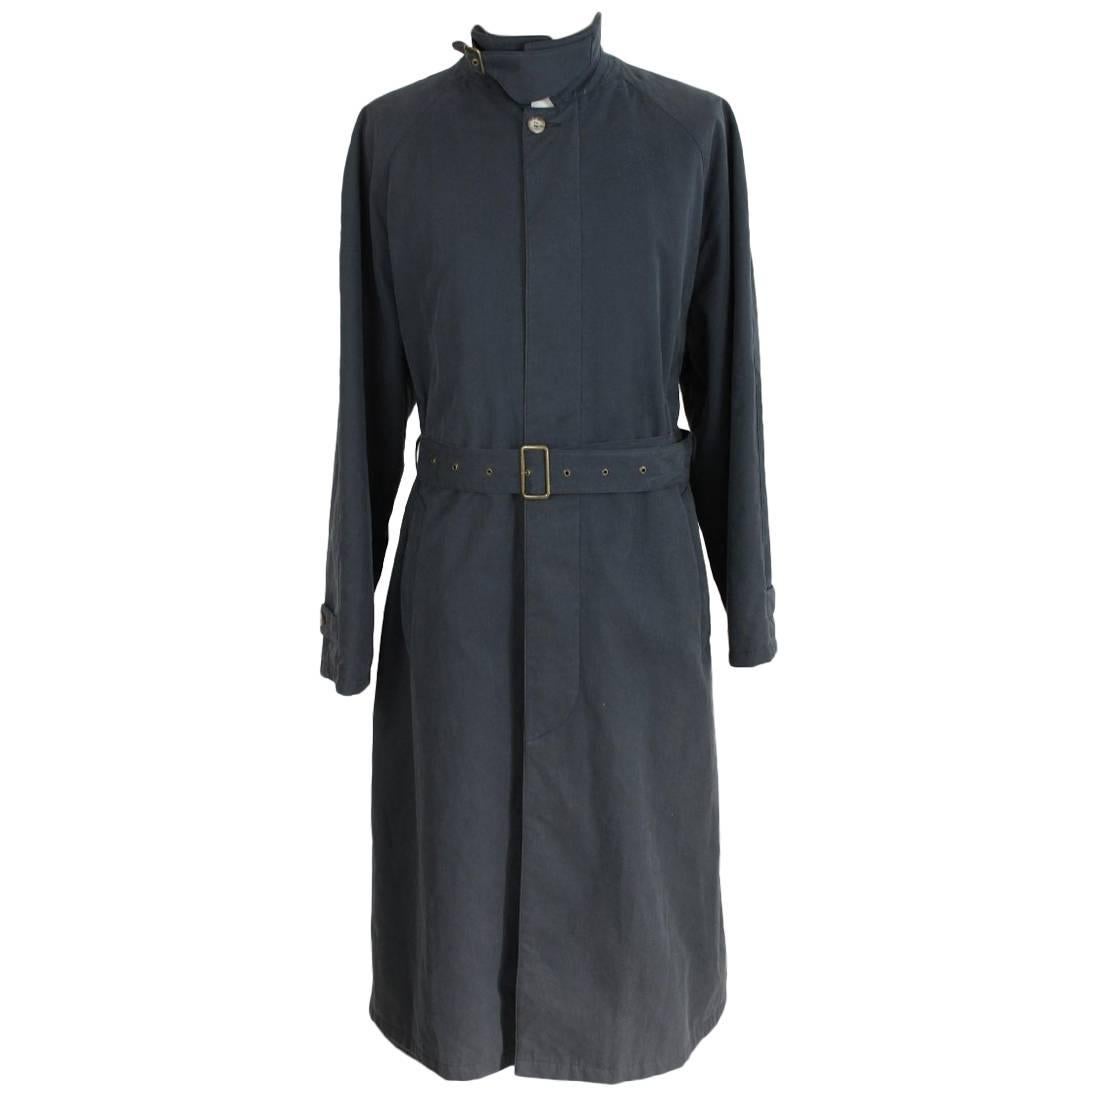 Giorgio Armani Collezioni vintage cotton gray trench coat size 50 it made italy 